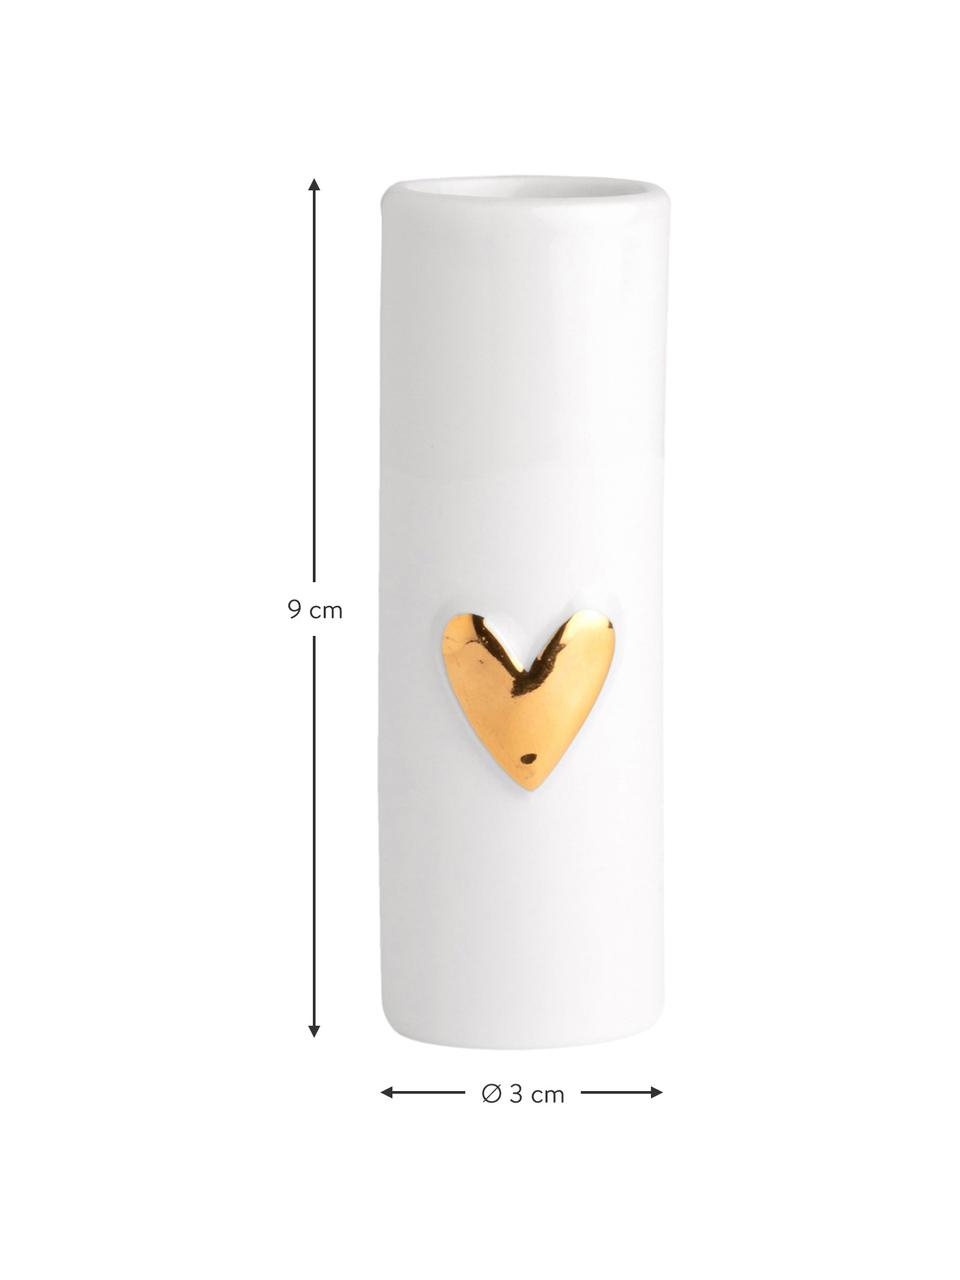 Kleine porseleinen vaasjes Heart, 2 stuks, Porselein, Wit, goudkleurig, Ø 3 x H 9 cm